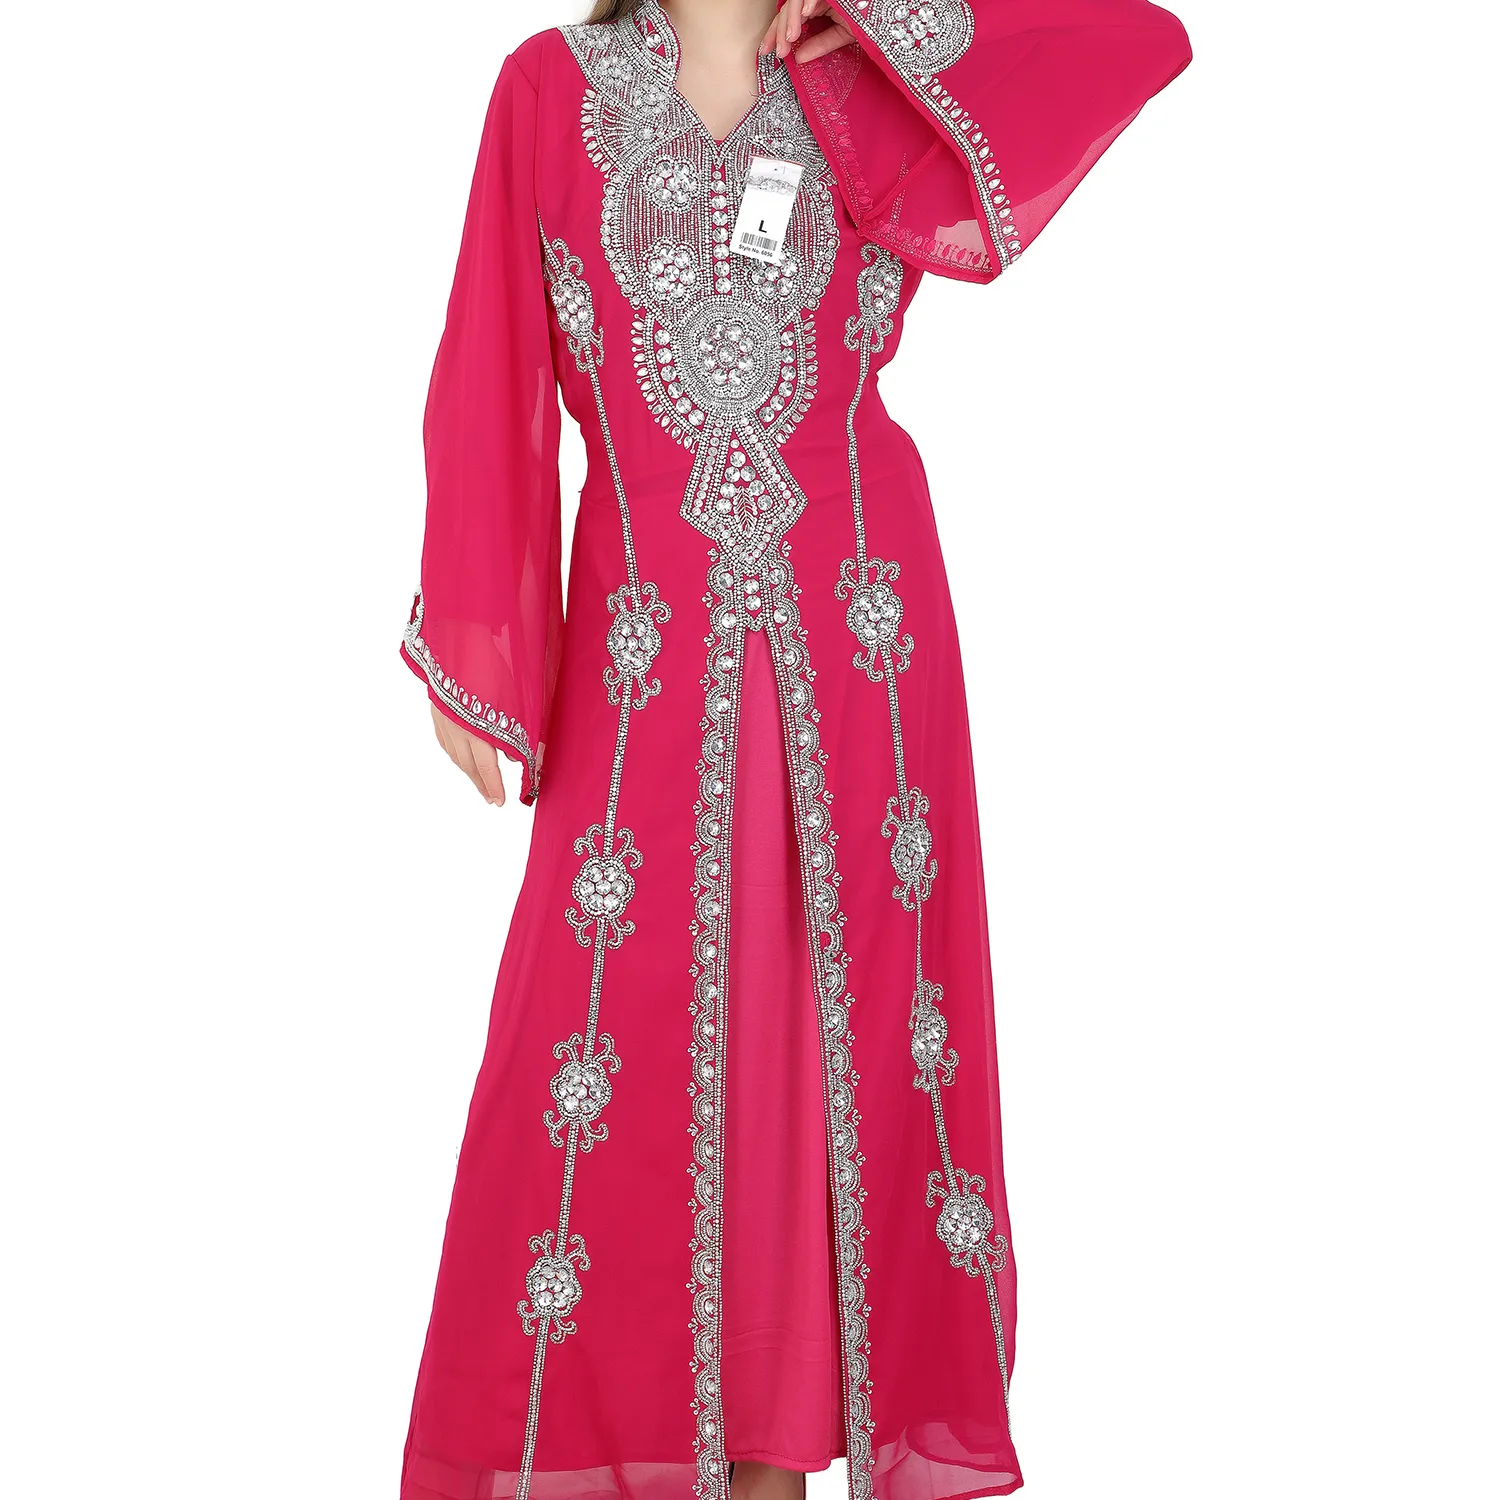 Yenİ Dubai style abaya süslenmiş kadın giyim farasha abaya jalabiya uzun abaya parti giyim için tüm boyut ve daha fazlası sonra 20 renkler